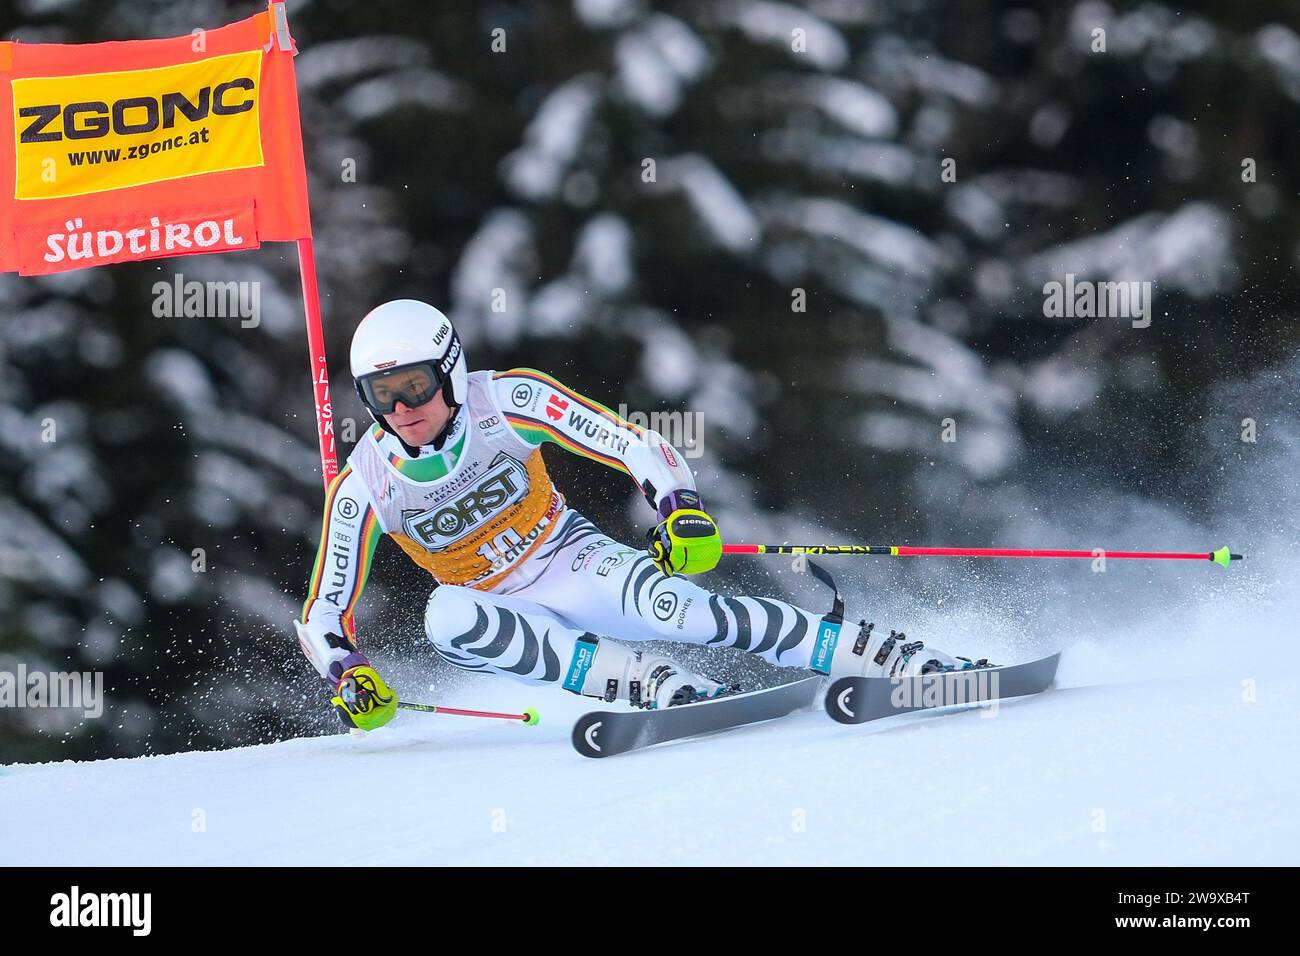 Alexander Schmid (GER) gareggia durante la Coppa del mondo di sci alpino Audi FIS, MenÕs Giant Slalom Race sulla pista Gran Risa, alta Badia il 17 dicembre 2023, Foto Stock